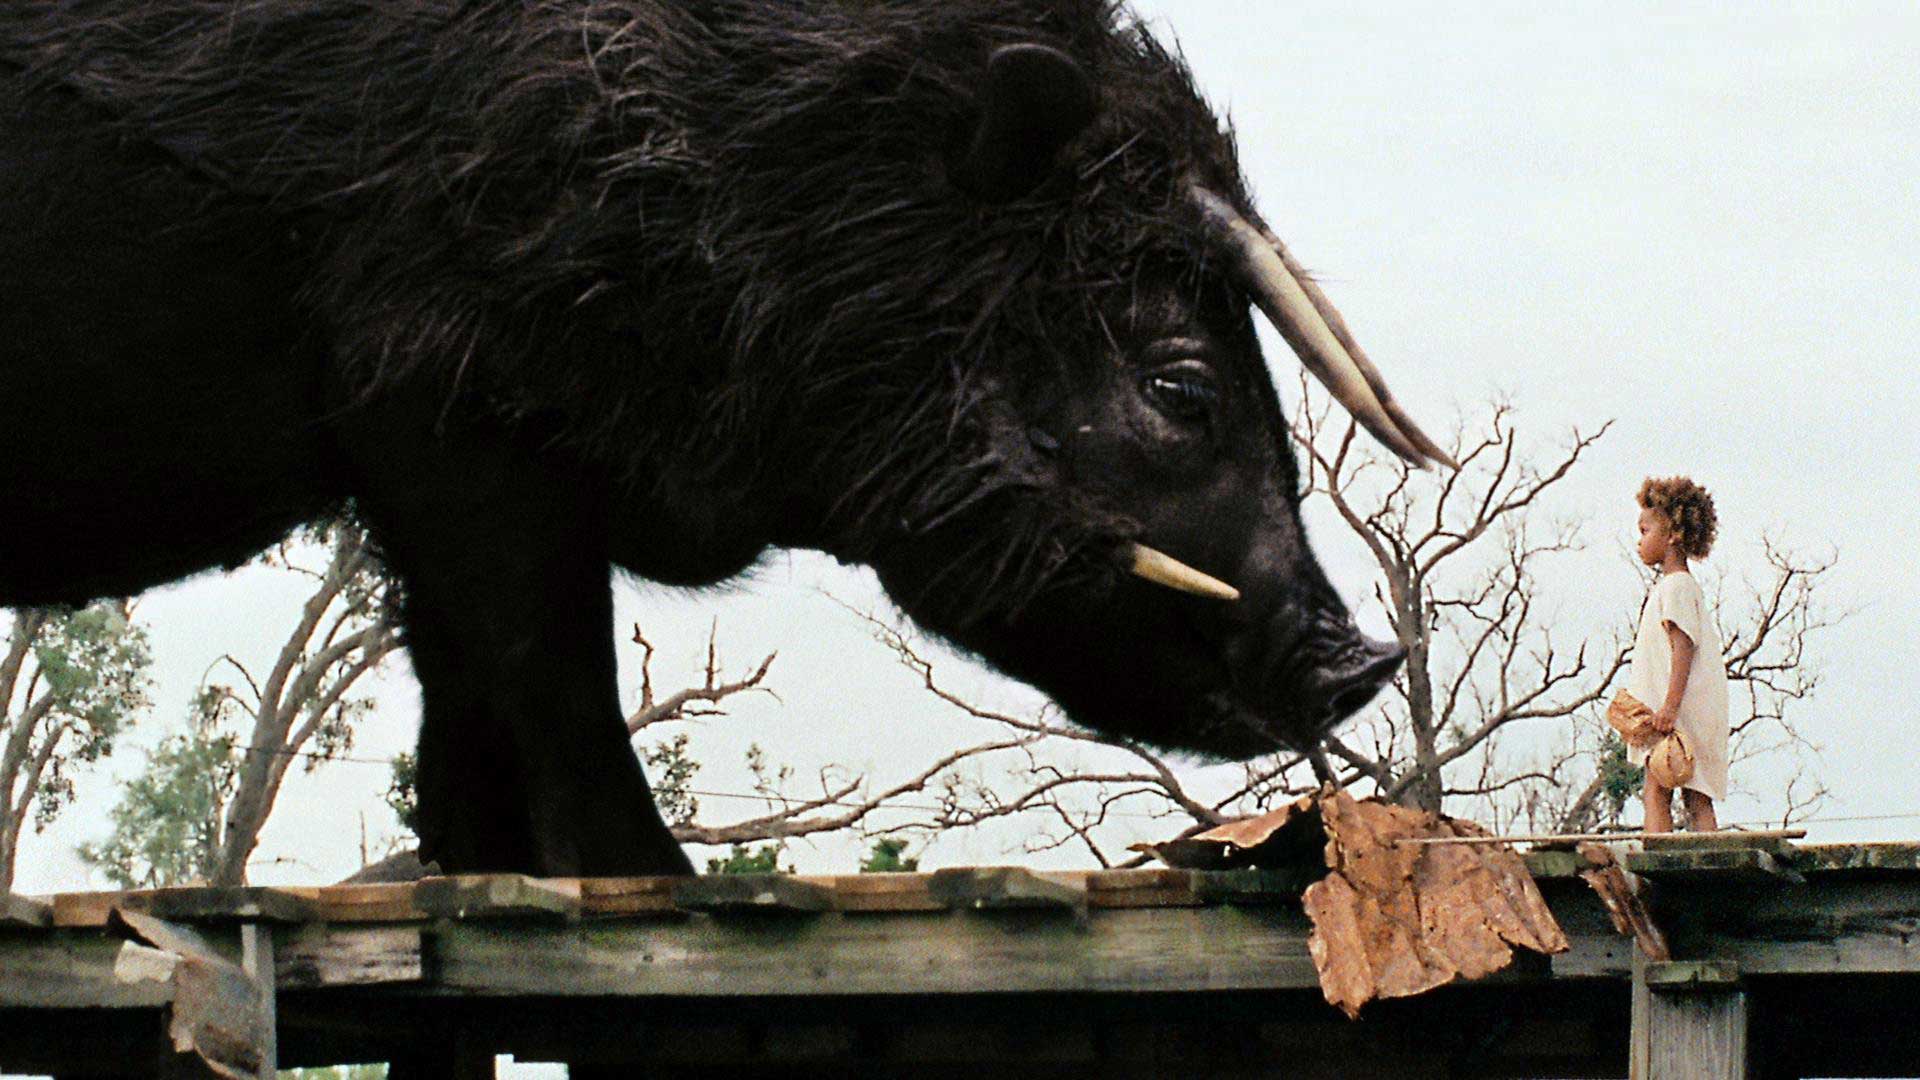 فیلم Beasts of the Southern Wild و بچه کوچک مقابل حیوان بسیار بزرگ سیاه رنگ